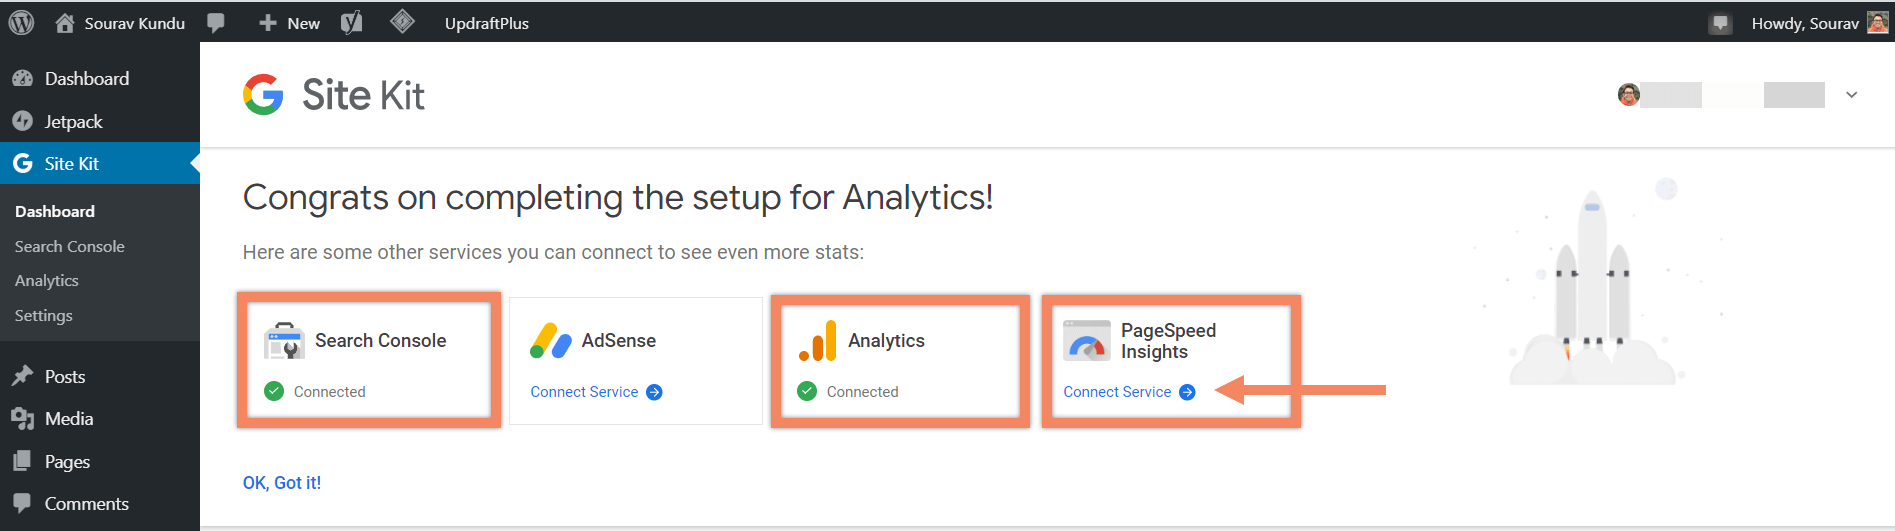 Cómo vincular el kit del sitio de Google y Google Analytics 4 Success Pagespeed